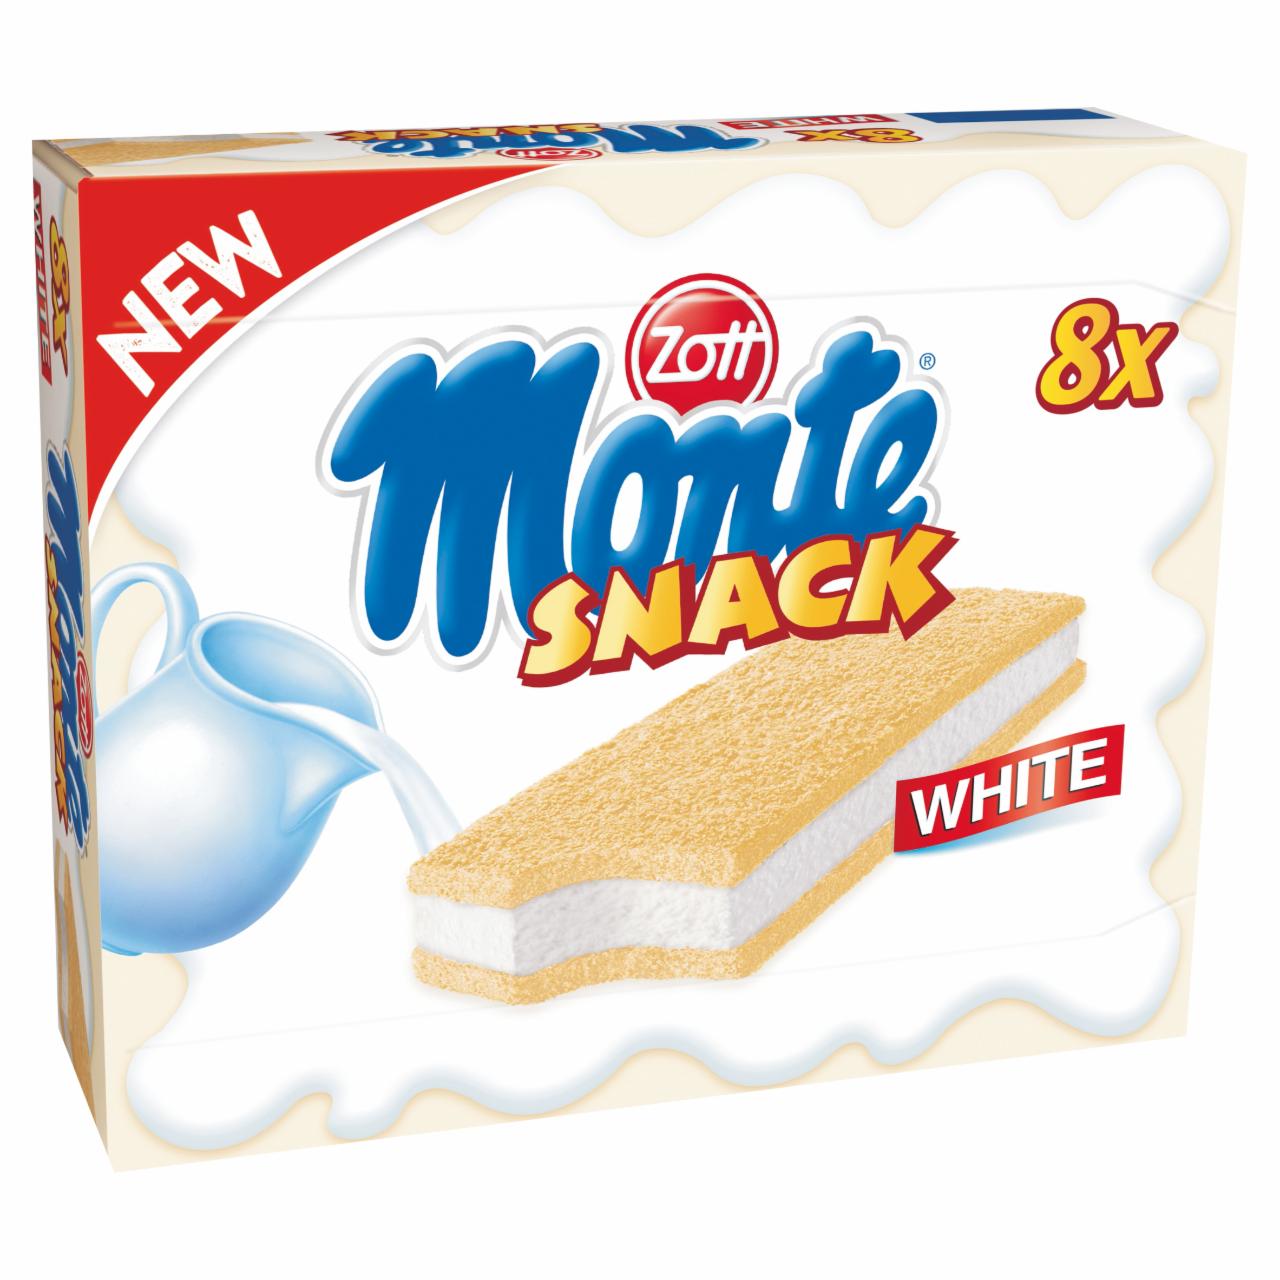 Képek - Zott Monte Snack White tejes krémmel töltött sütemény 8 x 29 g (232 g)